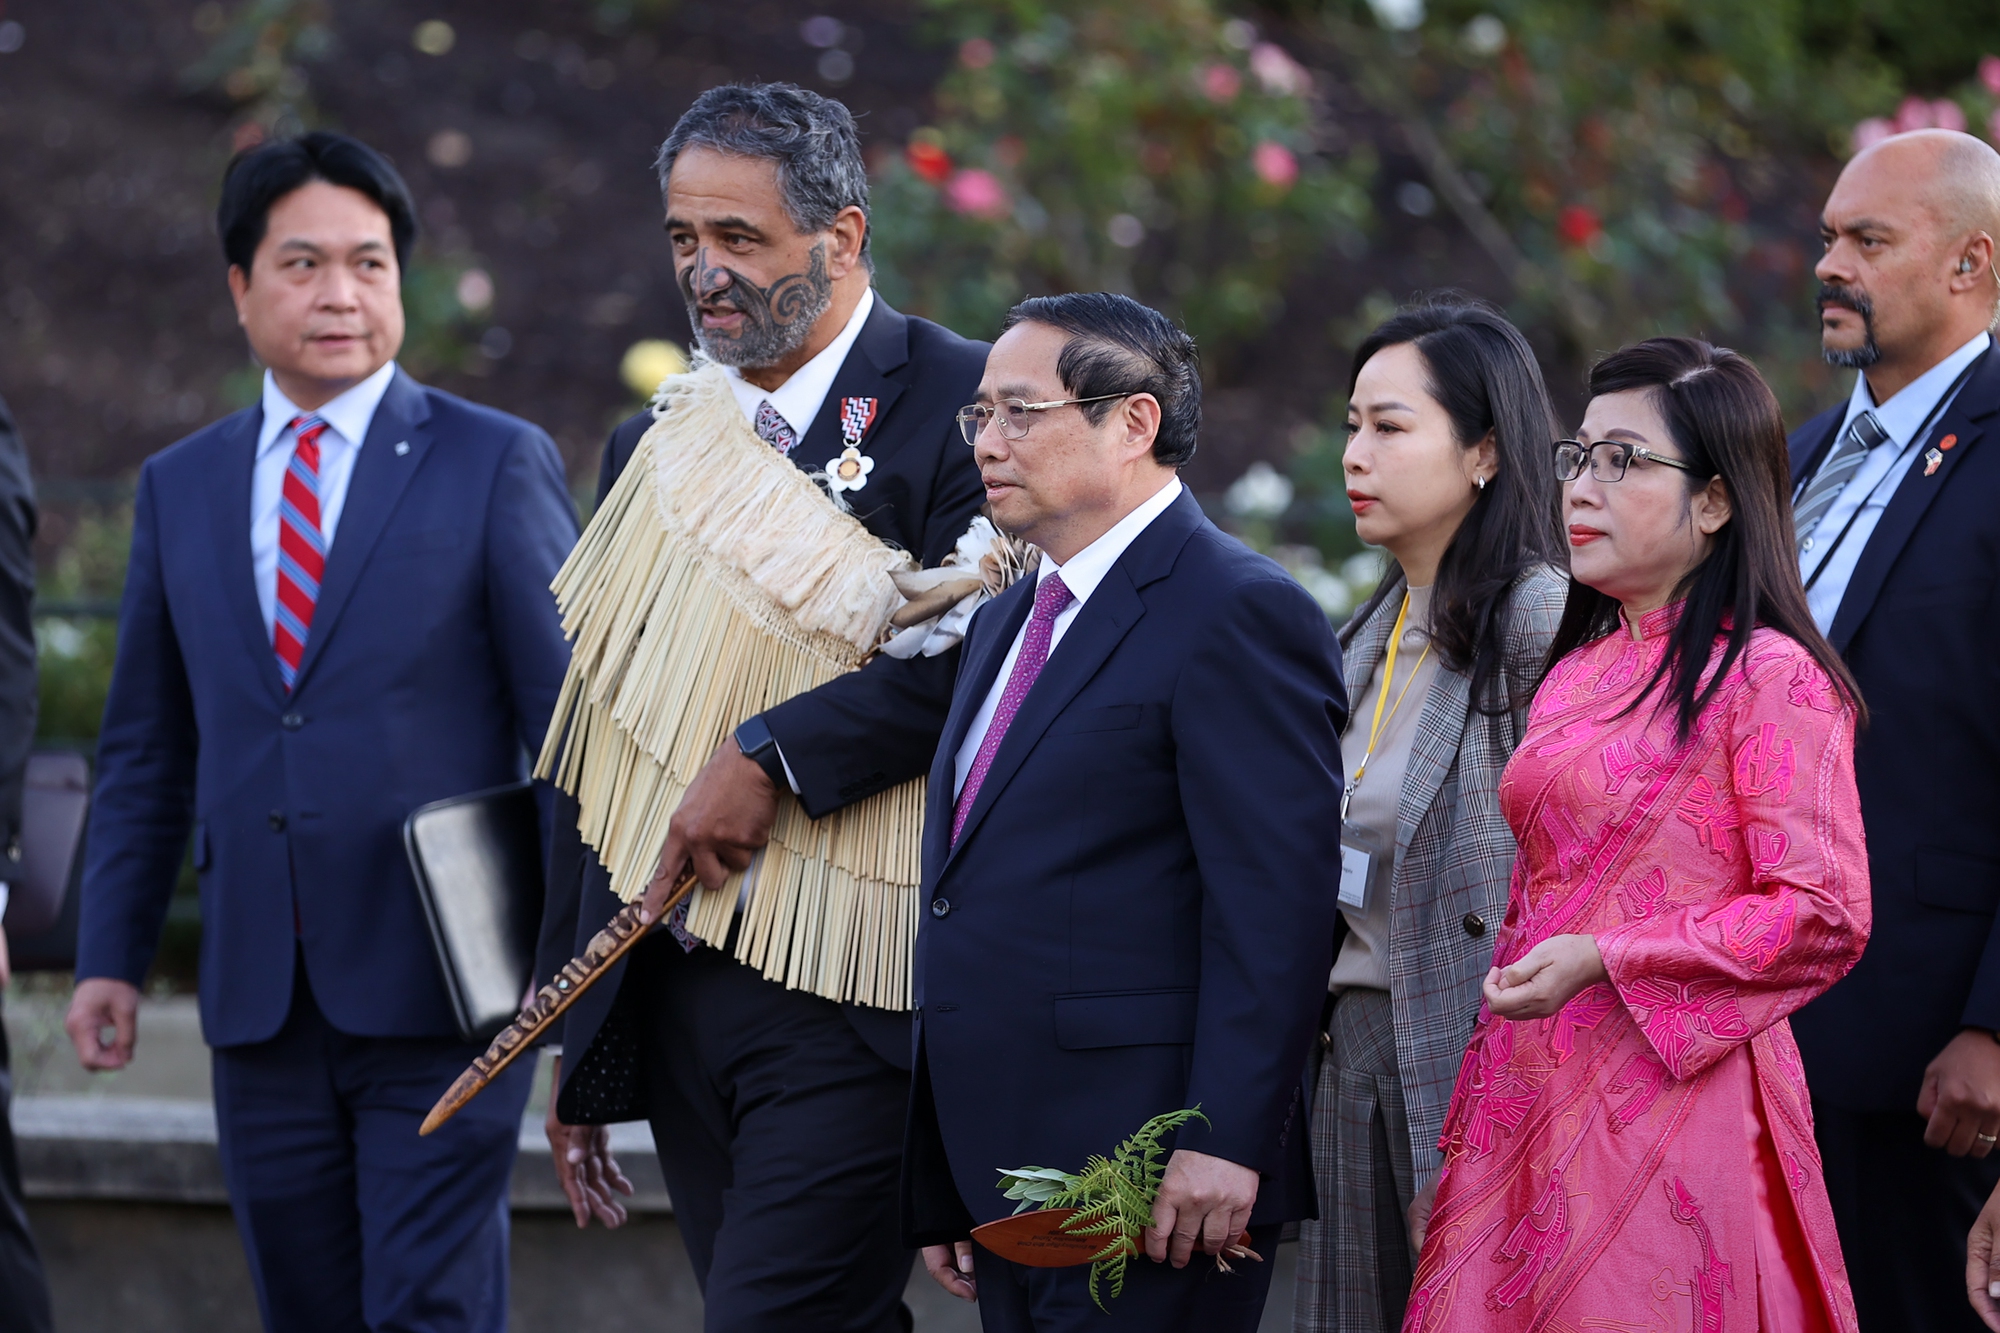 Thủ tướng Chính phủ nhận dao và cầm trong suốt buổi lễ - Ảnh: VGP/Nhật Bắc